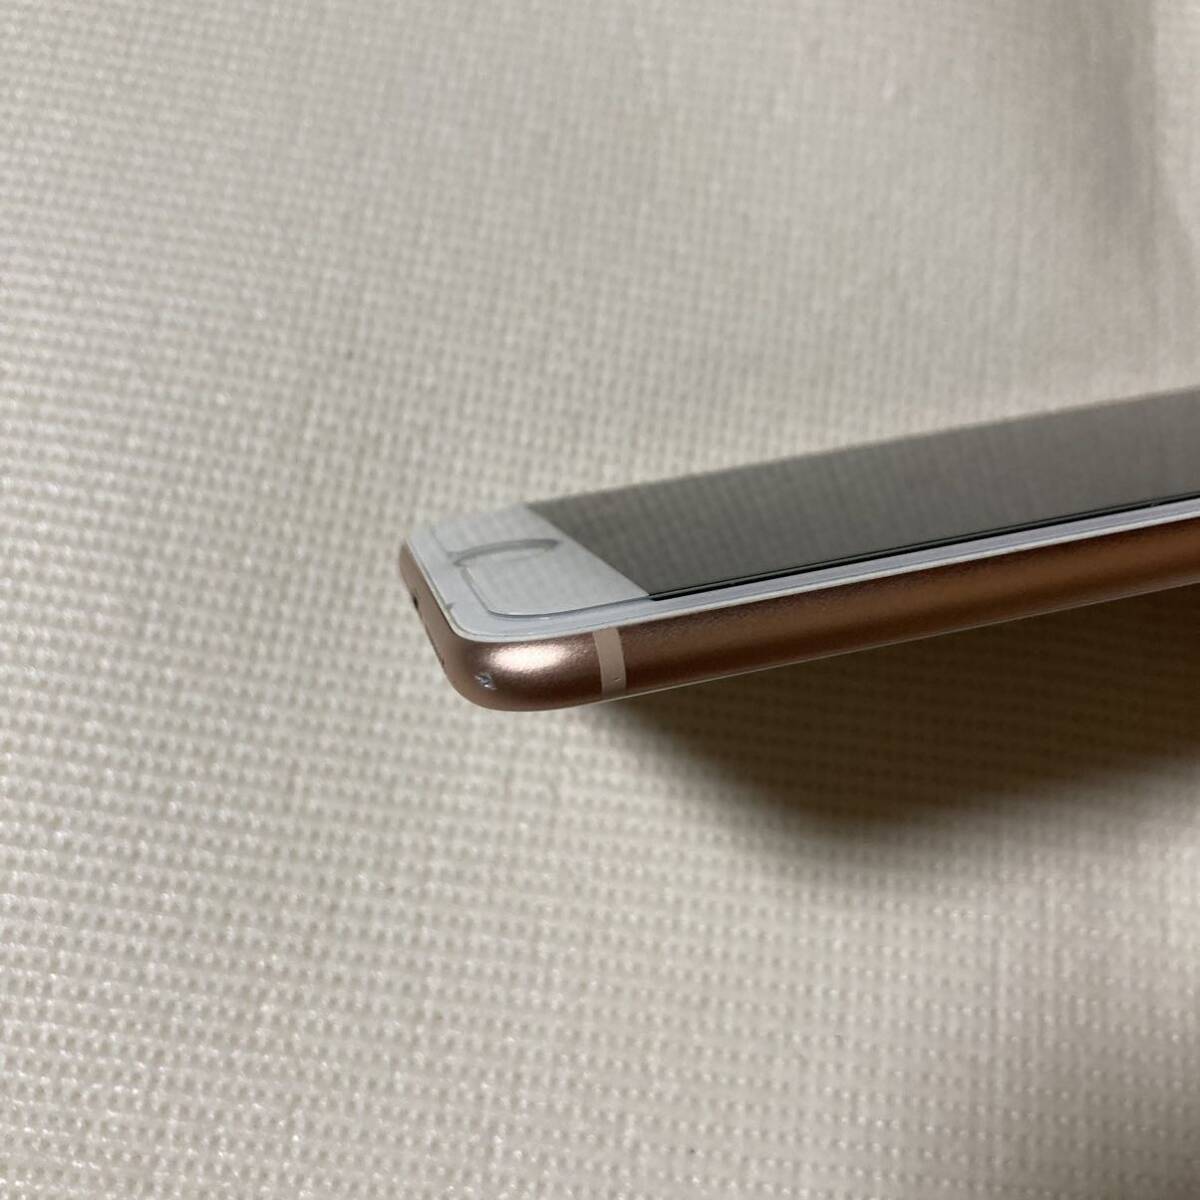 送料無料 SIMフリー iPhone8 Plus 64GB ゴールド バッテリー最大容量100% SIMロック解除の画像6